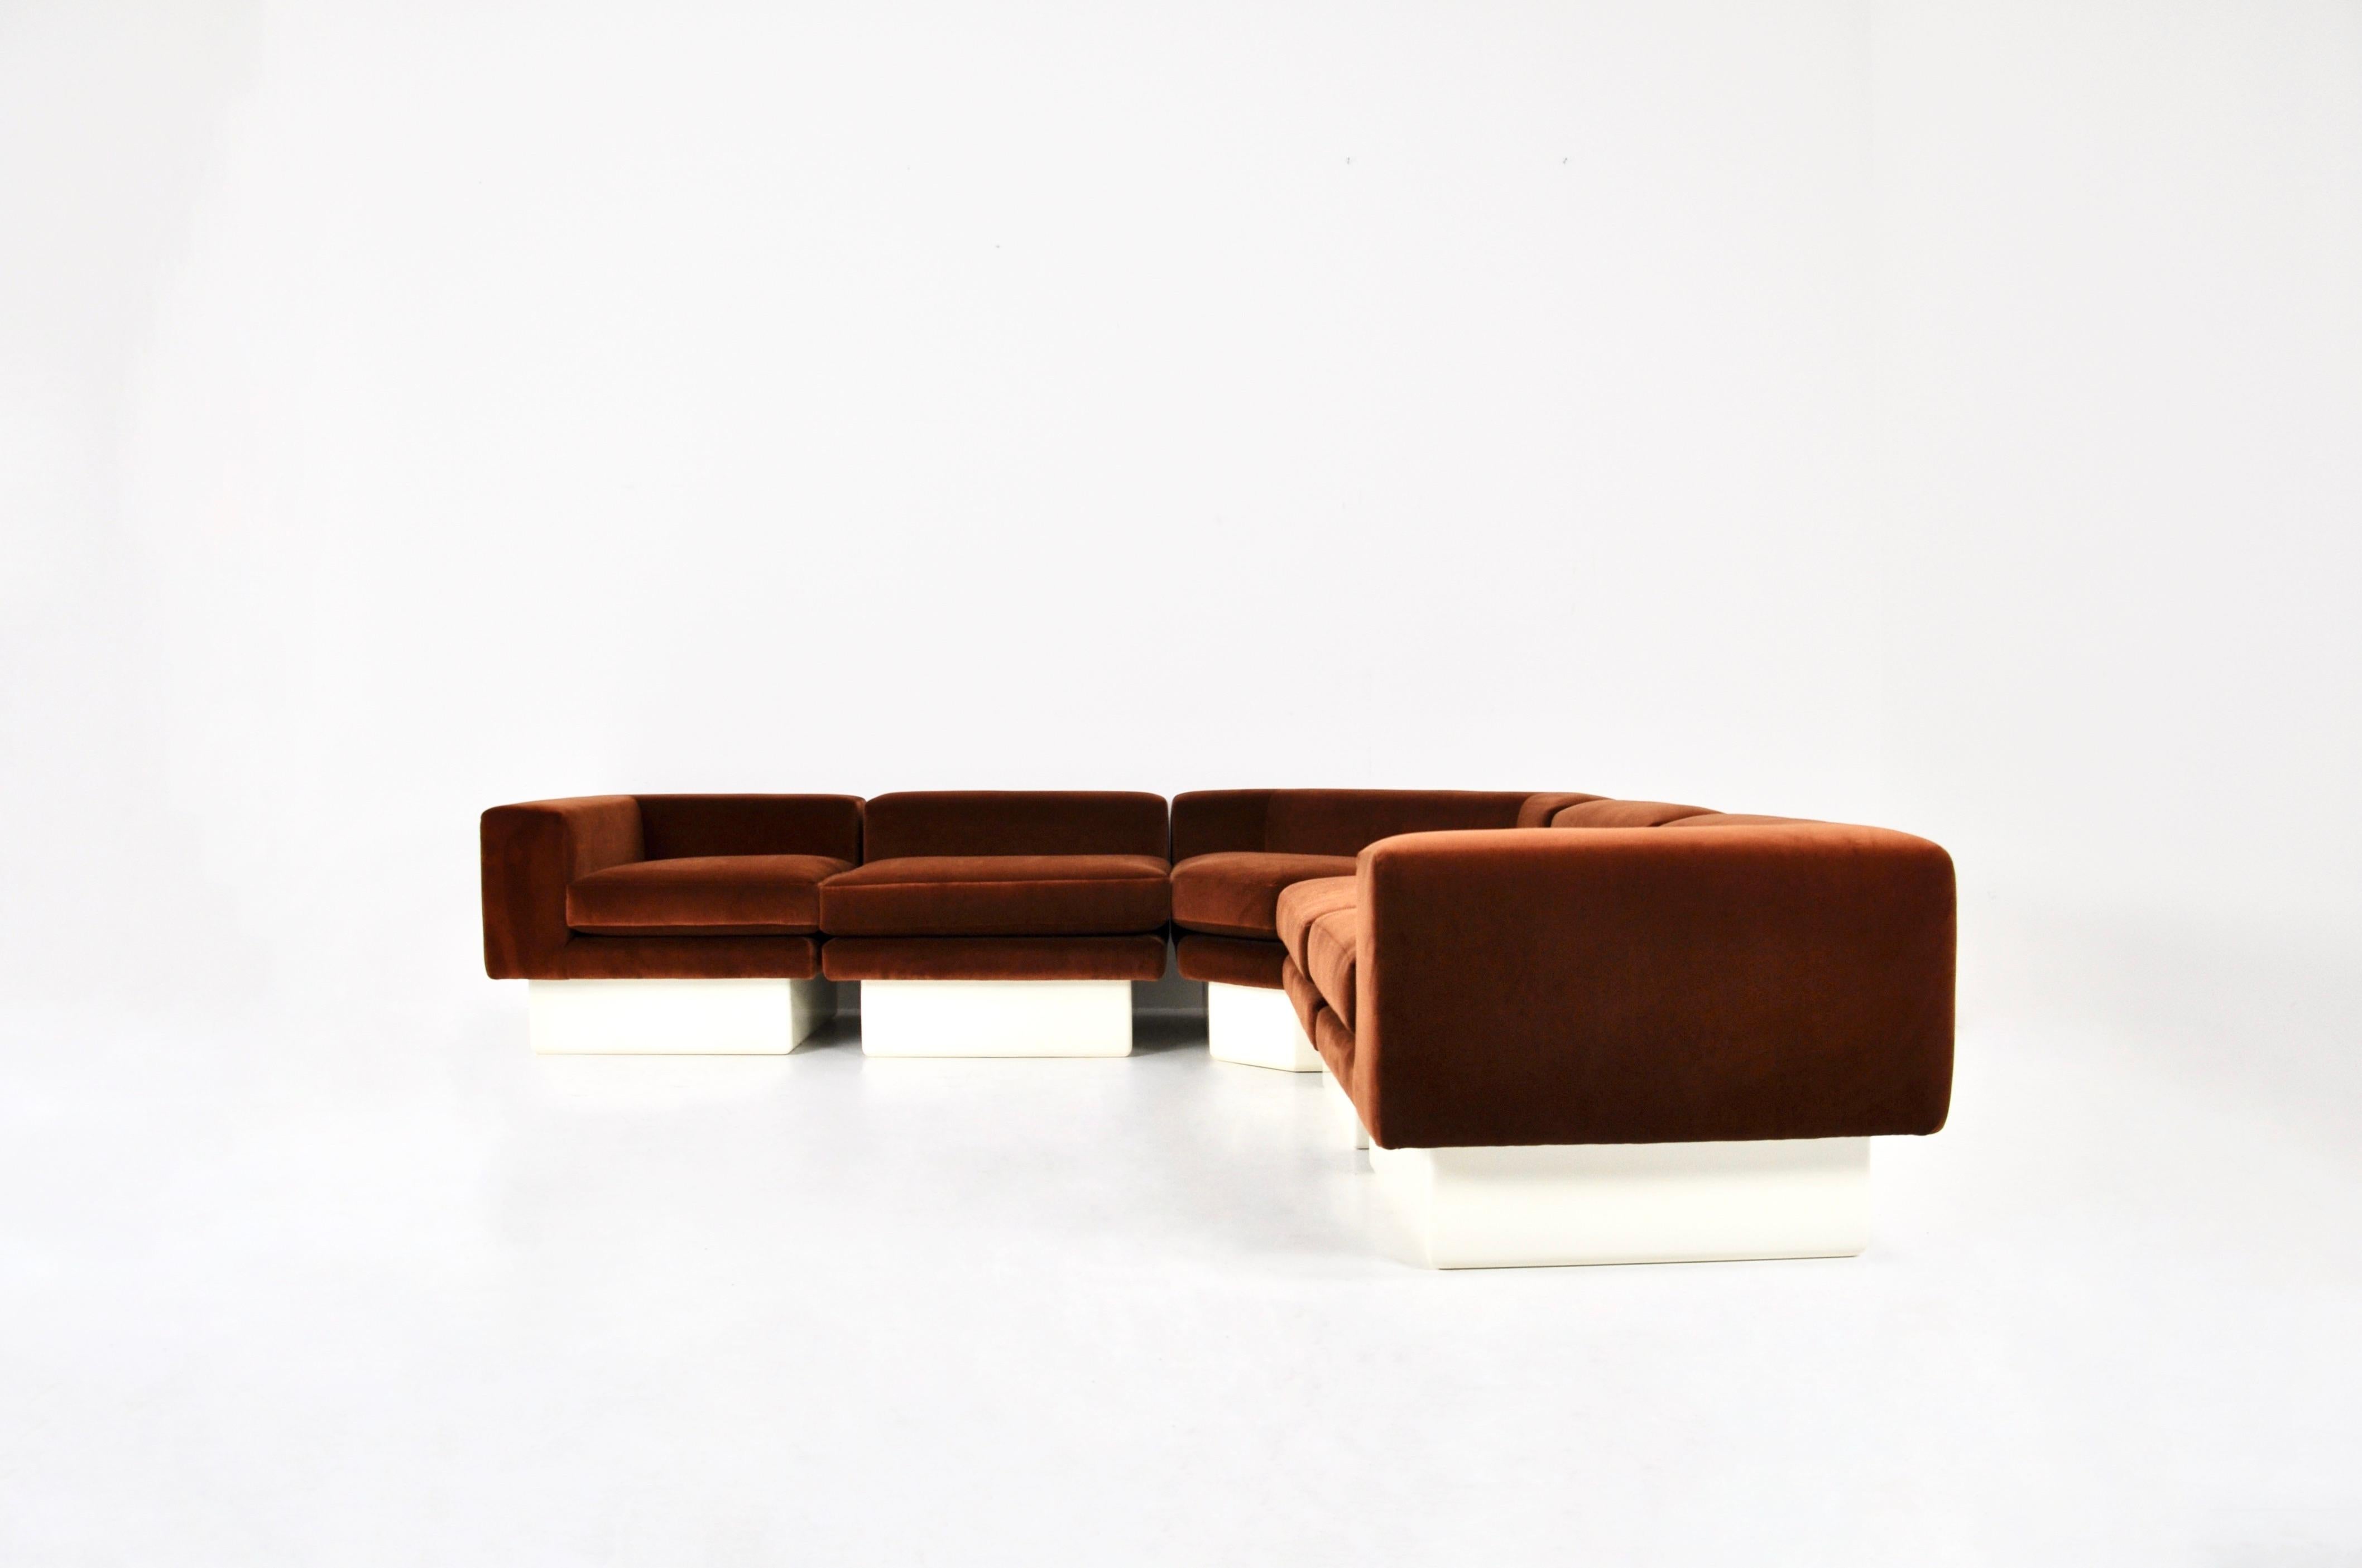 Italienisches modulares Sofa, 1980er Jahre (Ende des 20. Jahrhunderts)